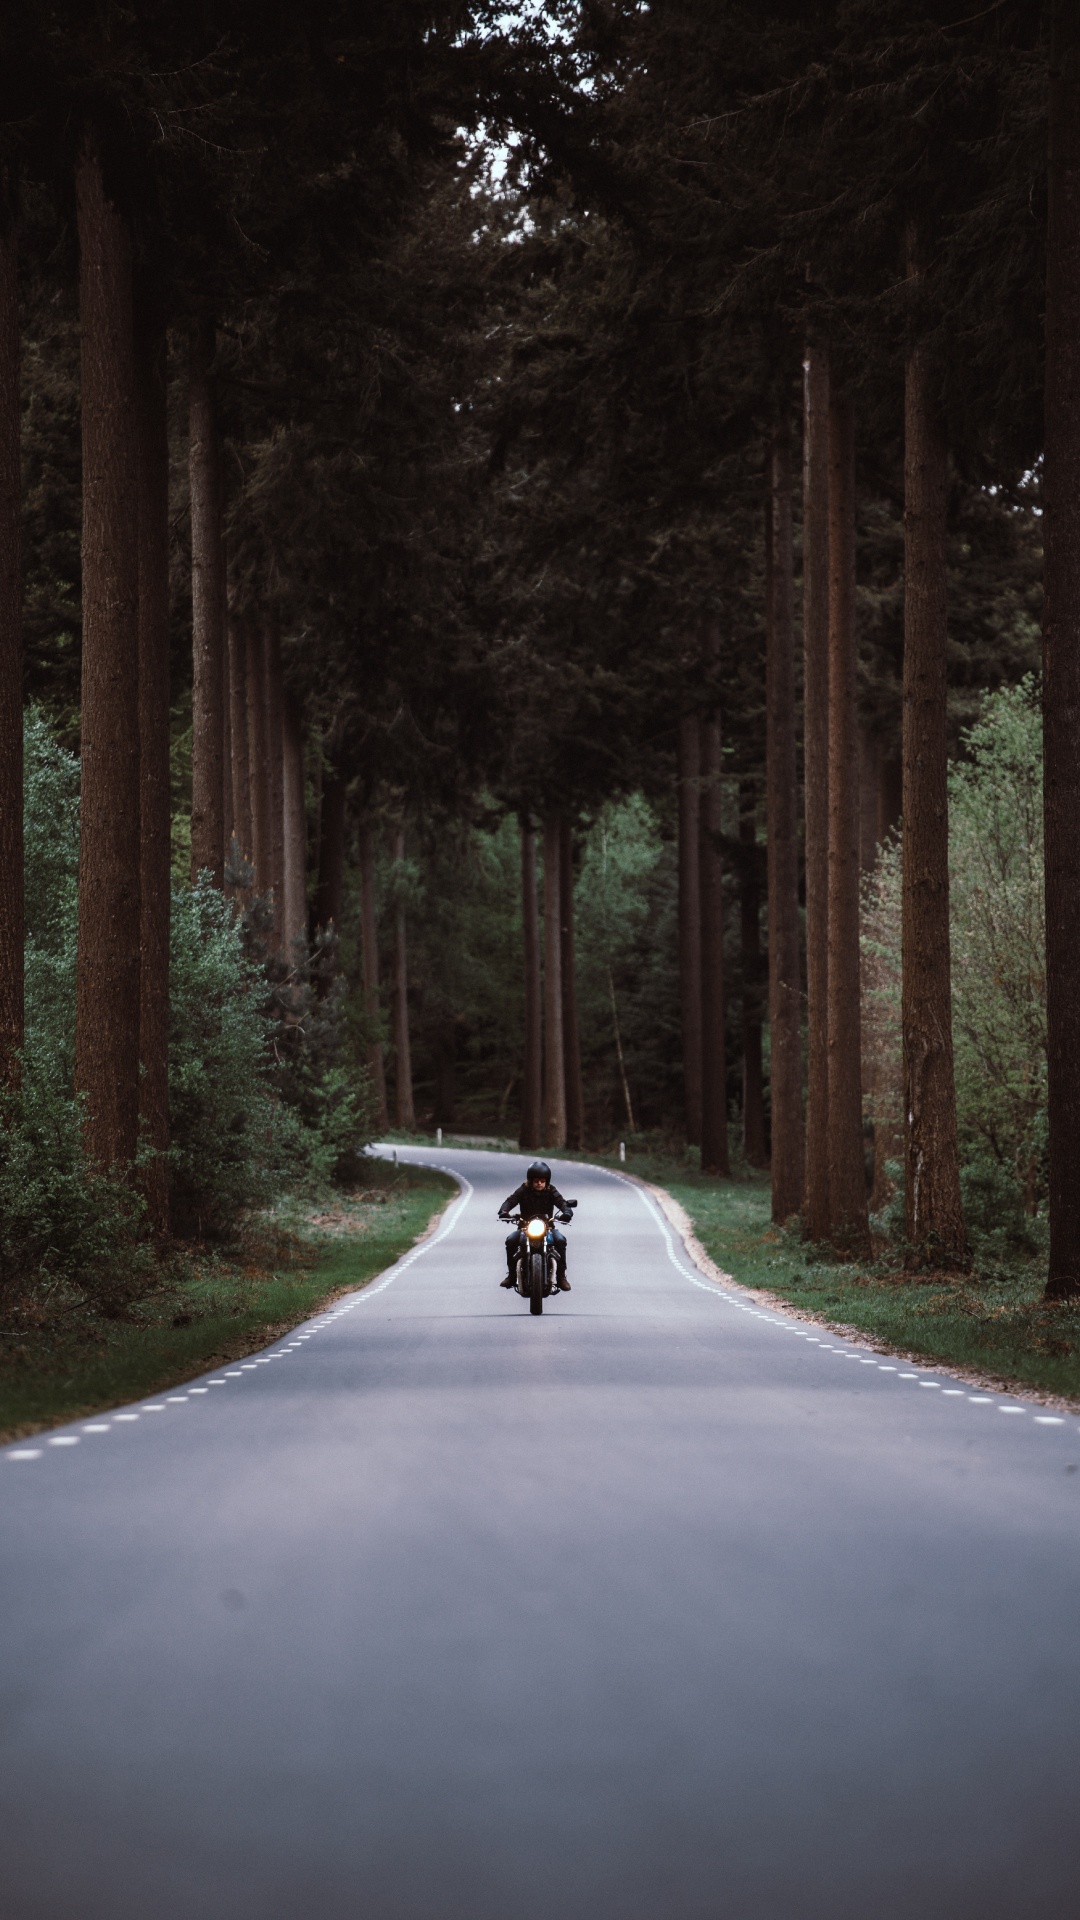 Persona en Motocicleta en la Carretera Entre Árboles Durante el Día. Wallpaper in 1080x1920 Resolution